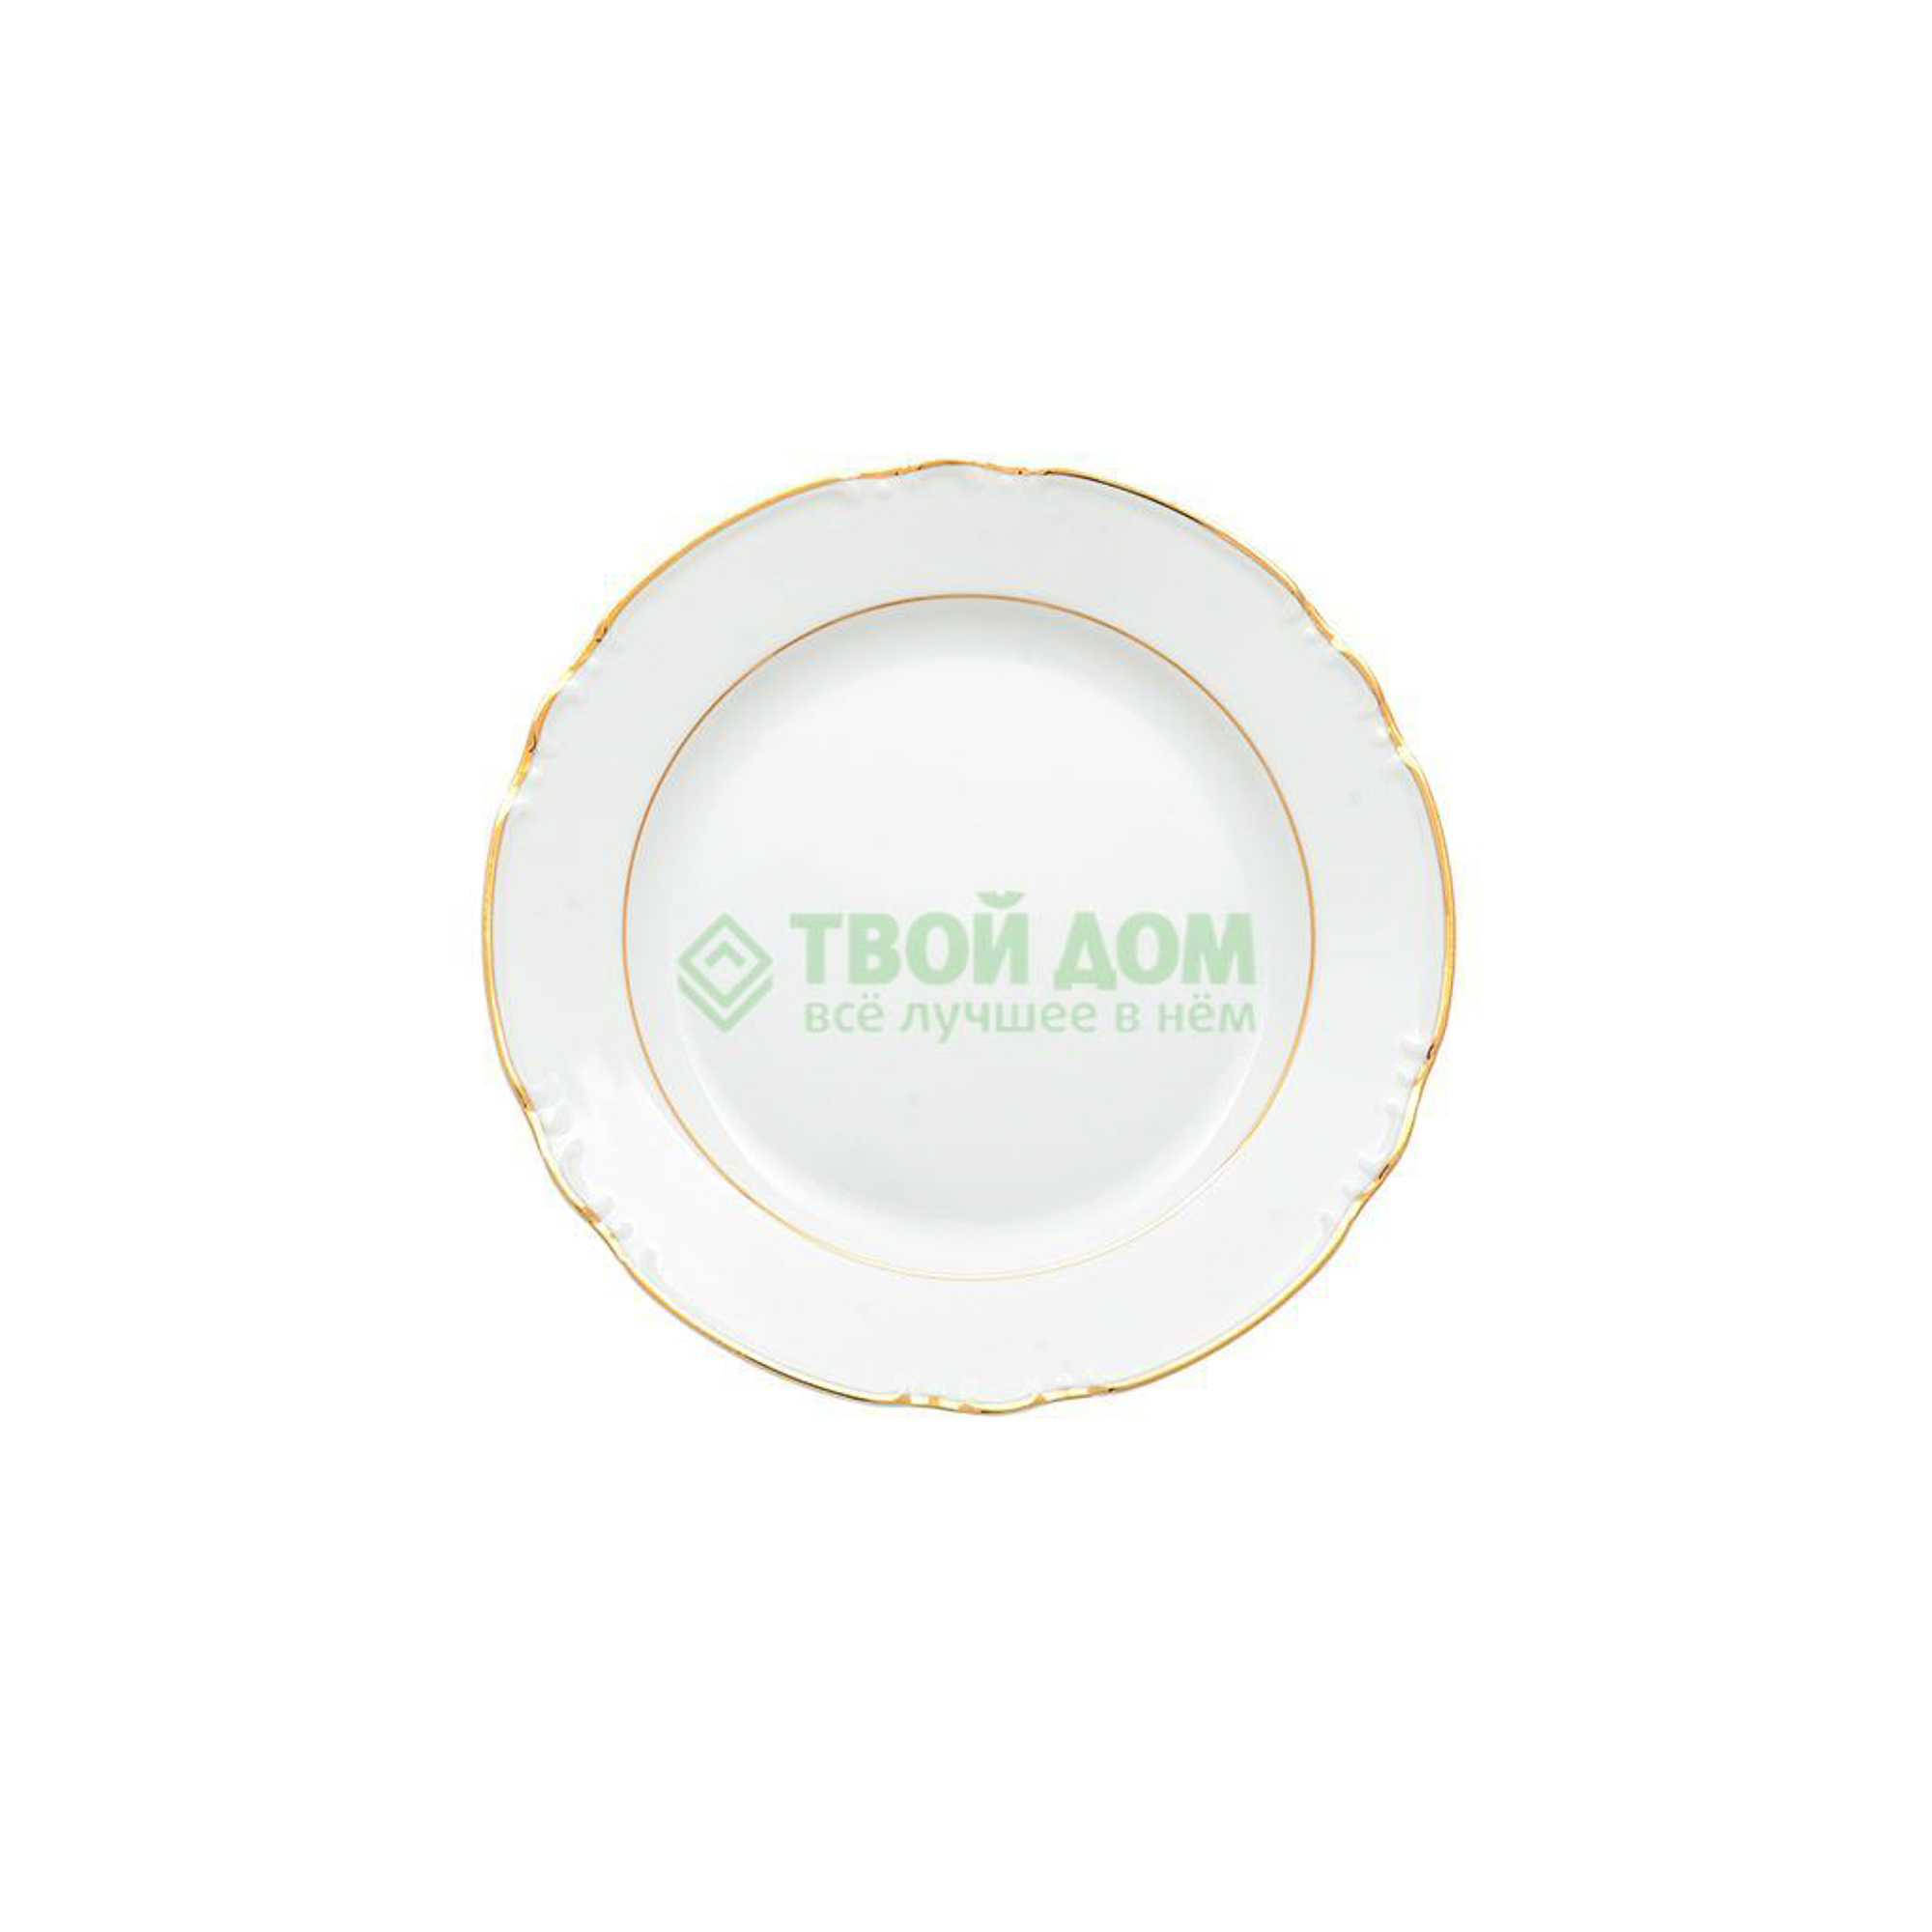 Тарелка Thun Констанция отводка золото 24 см